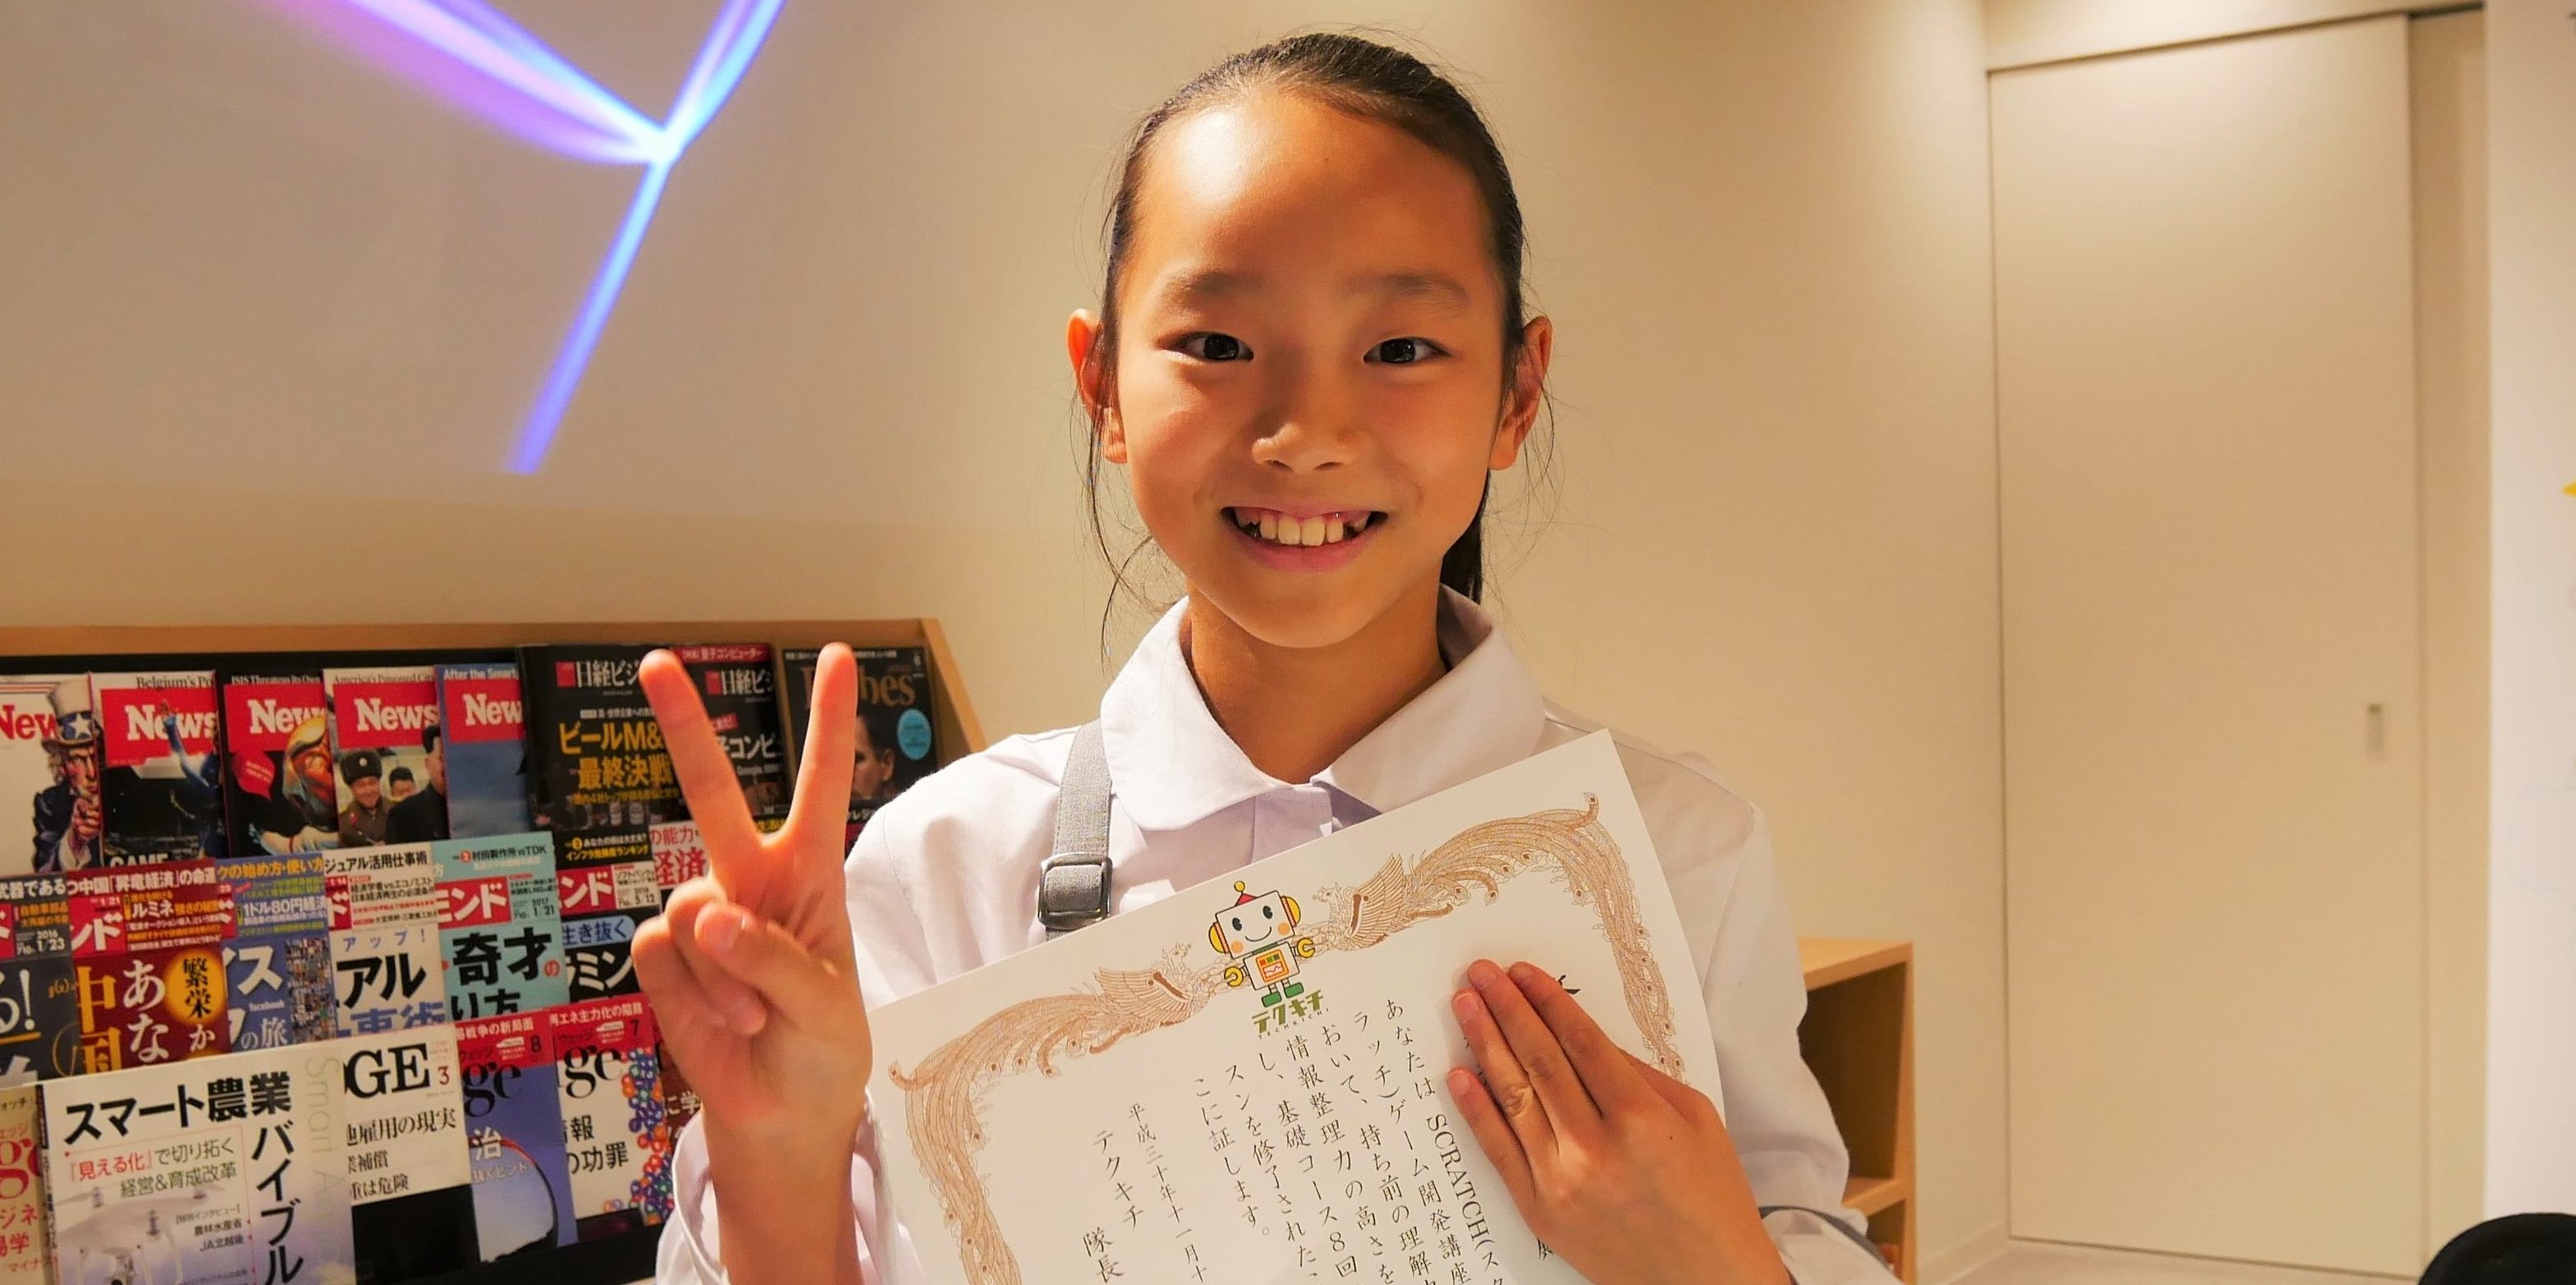 プログラミングスクール体験談 Yちゃん 小学校4年生女子